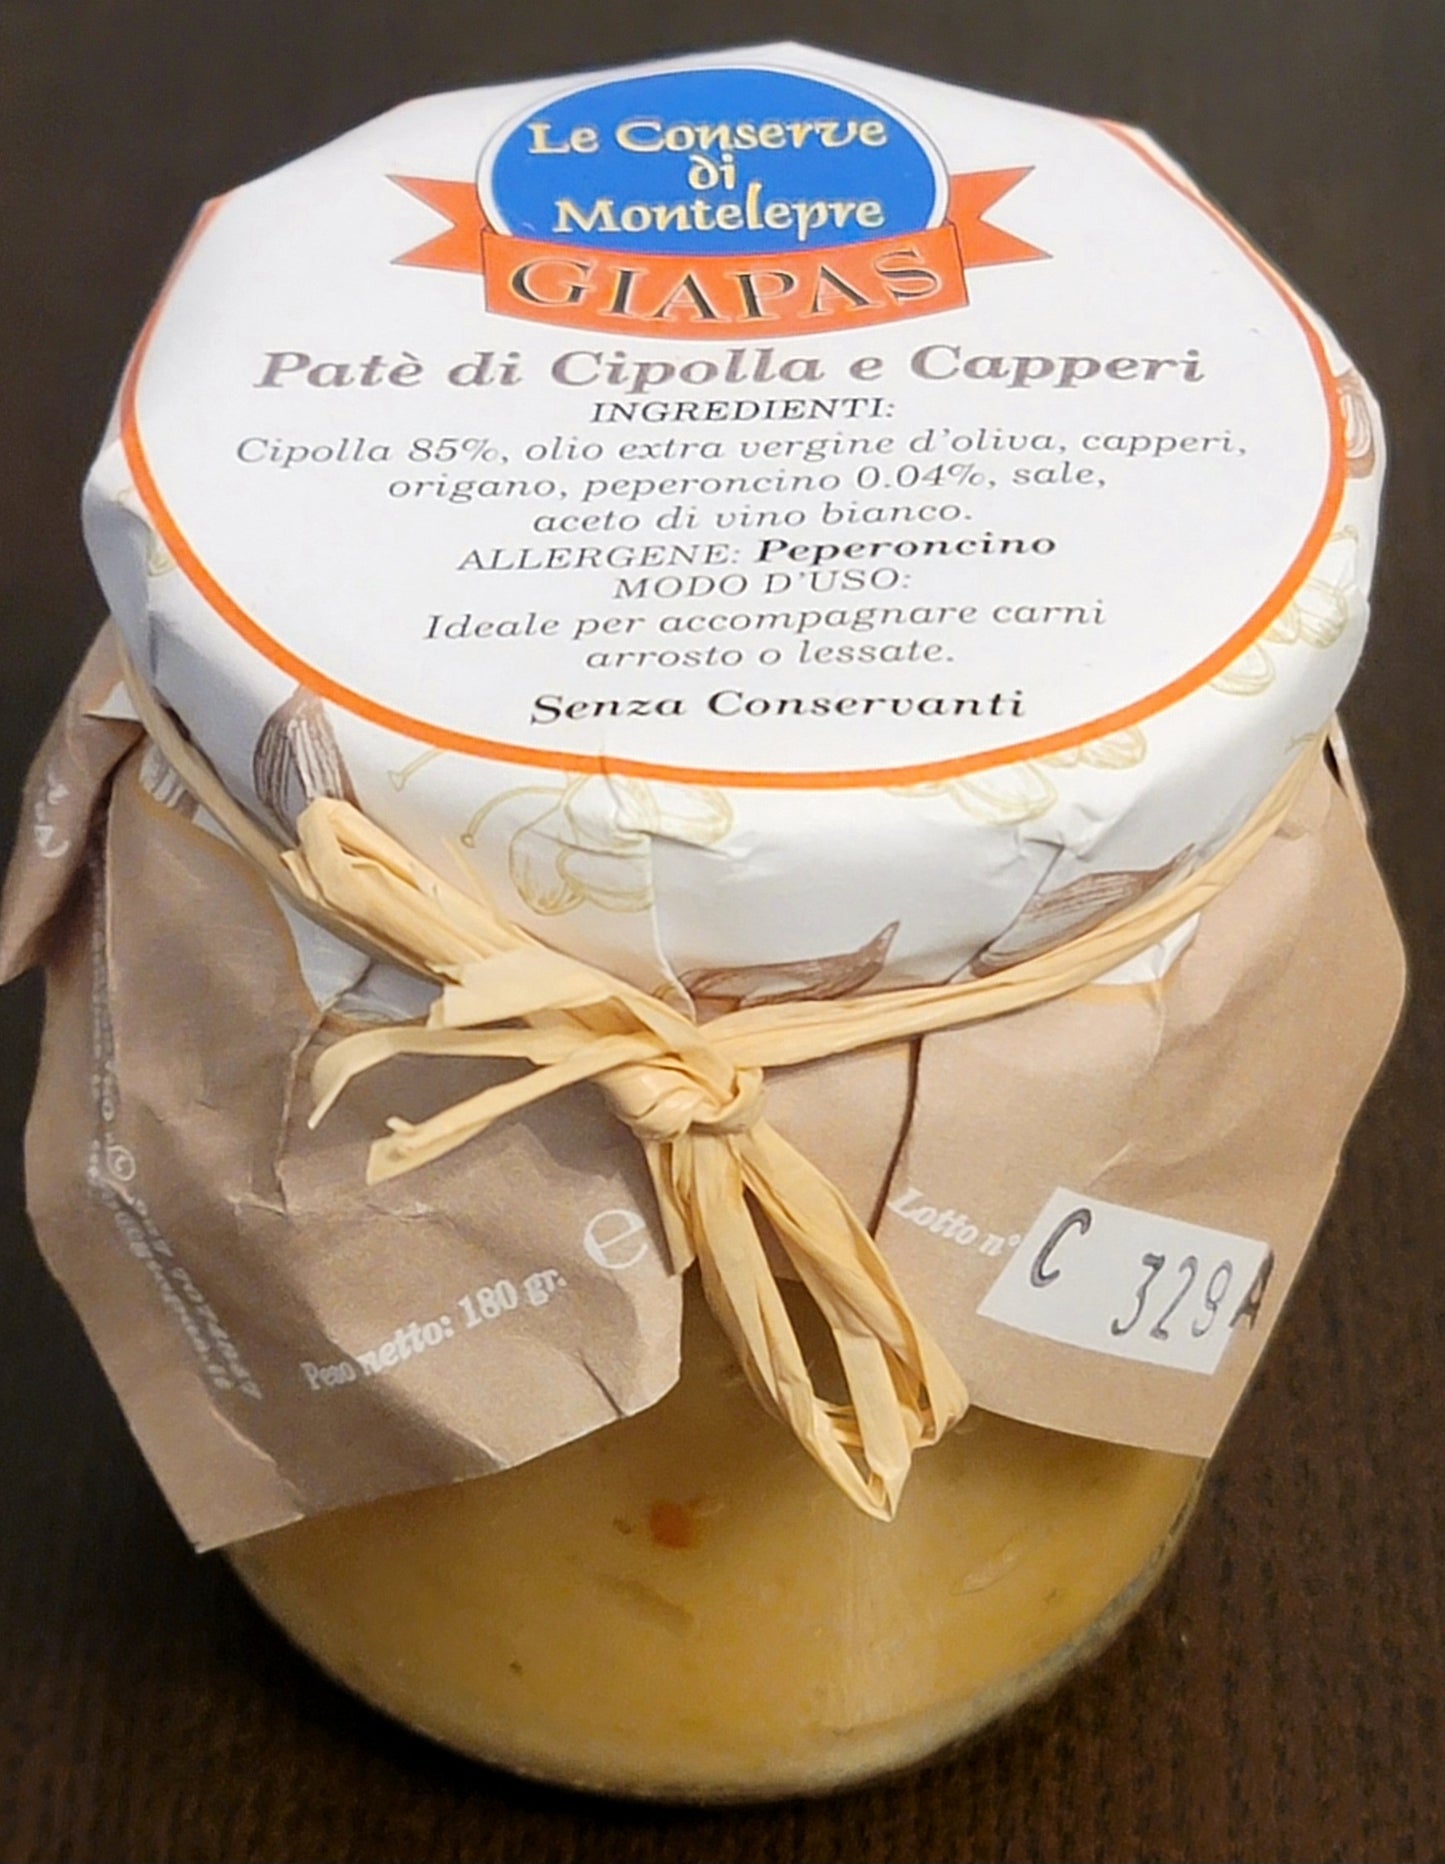 Giapas Le Conserve Di Montelepre Onion & Caper Paté